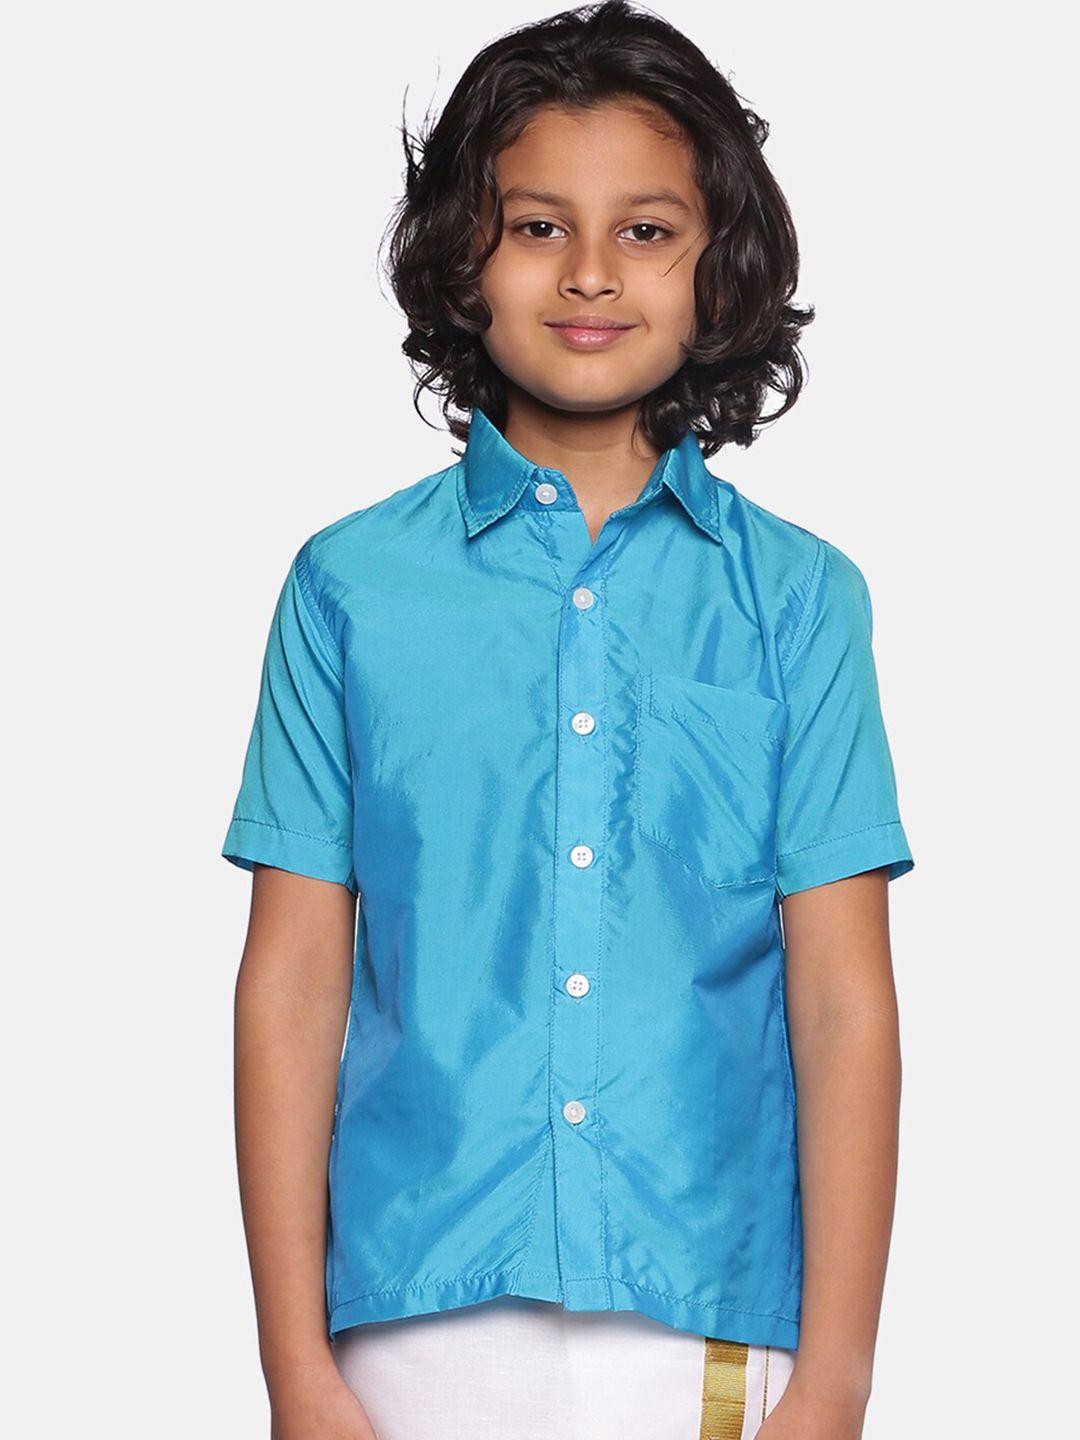 sethukrishna-boys-turquoise-blue-classic-casual-shirt